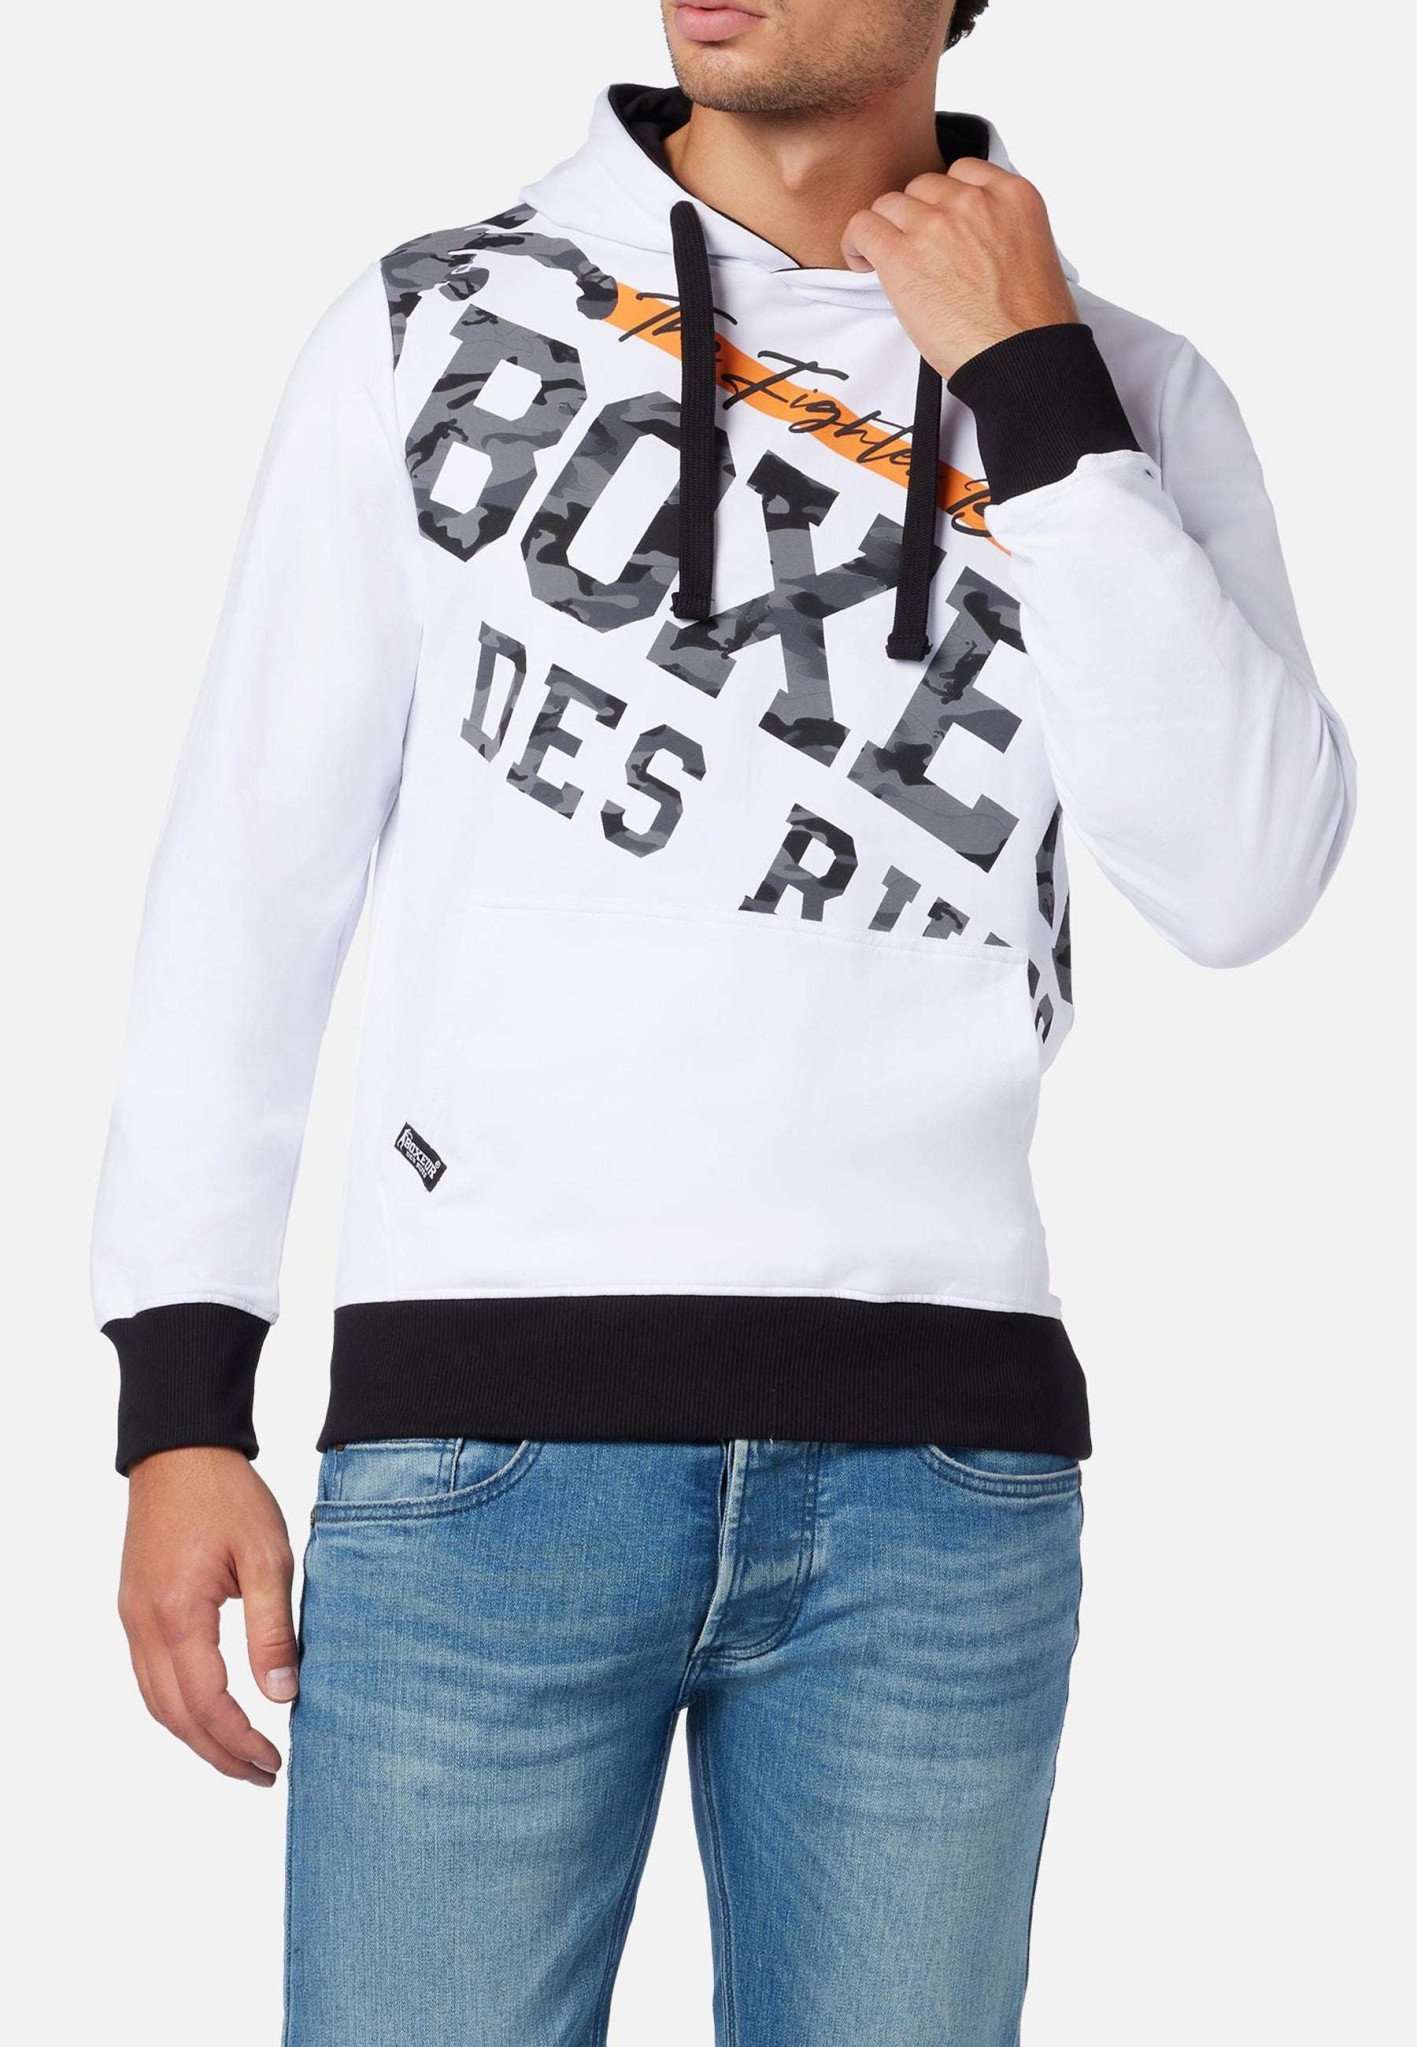 Printed Hoodie Sweatshirt in White Kapuzenpullover Boxeur des Rues   